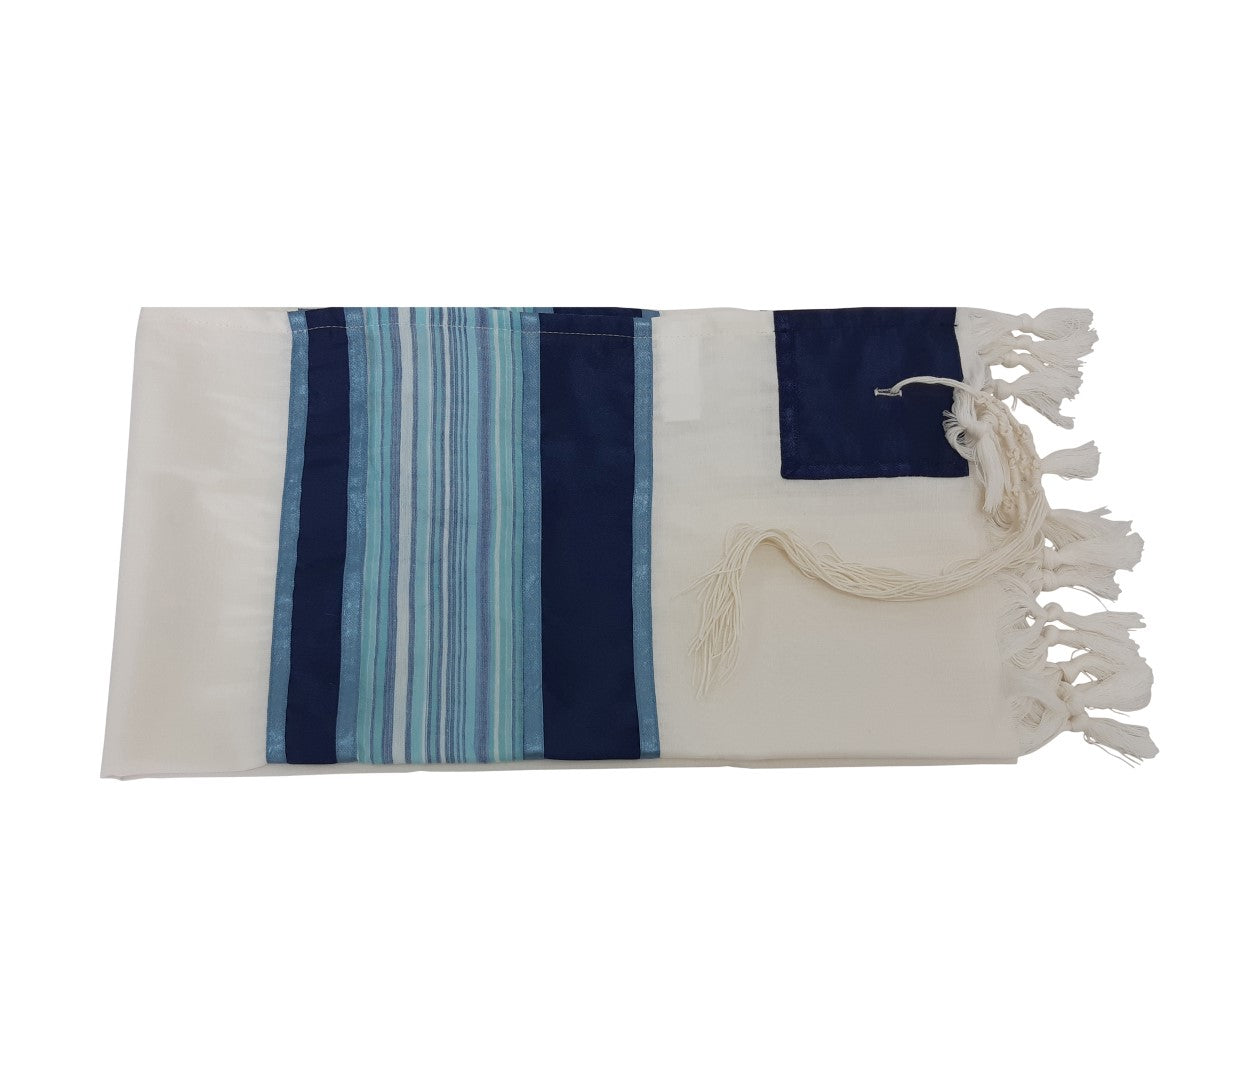 Light Blue and Silver Stripes on Wool Tallit, Bar Mitzvah Tallit flat 1, Tzitzit Custom Tallit from Israel